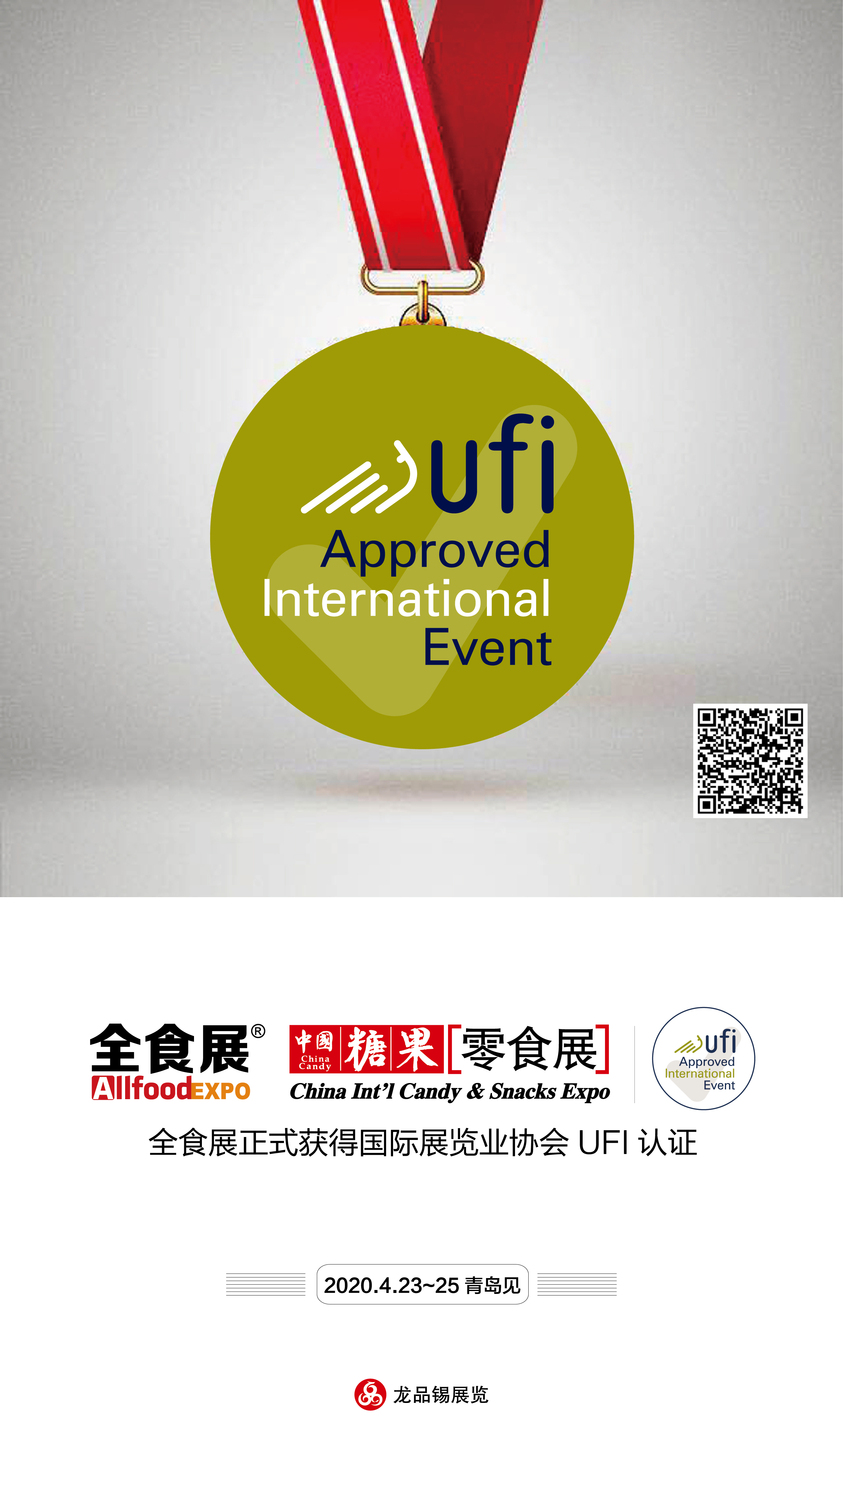 全食展通过UFI认证 正式进入国际顶尖展览会行列